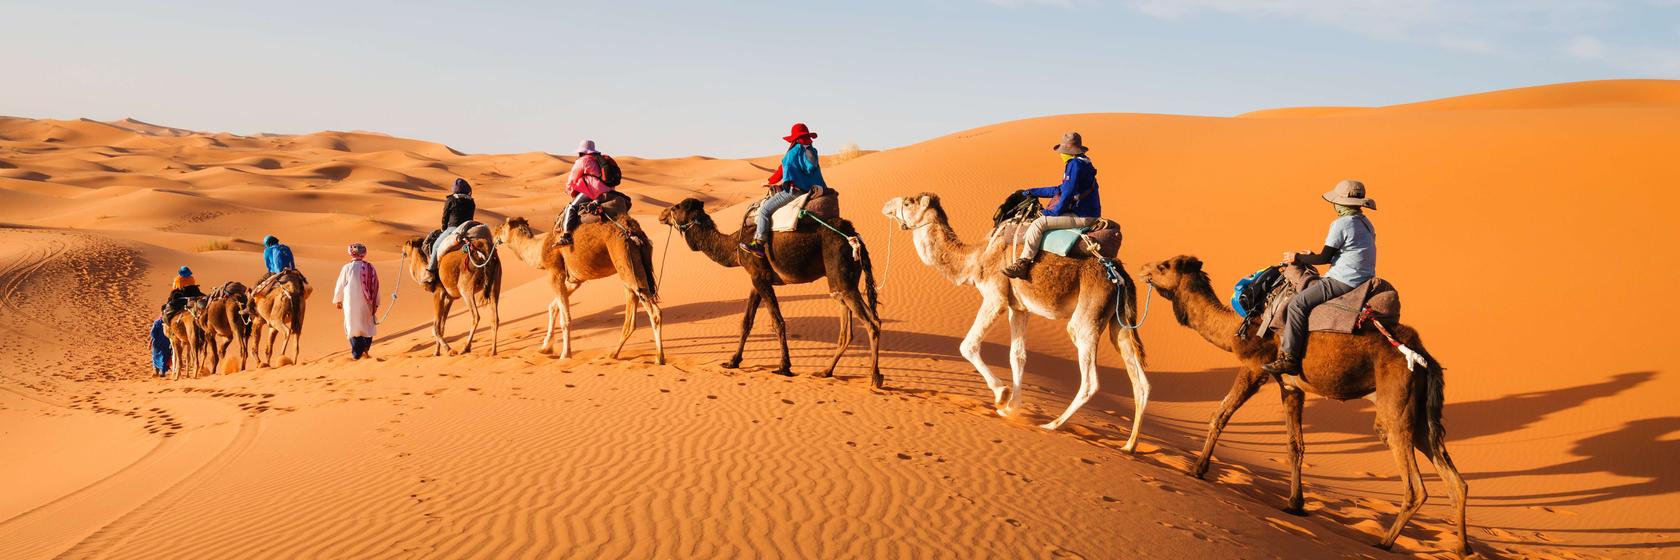 Co si  nezapomenout vzít s sebou do Maroka